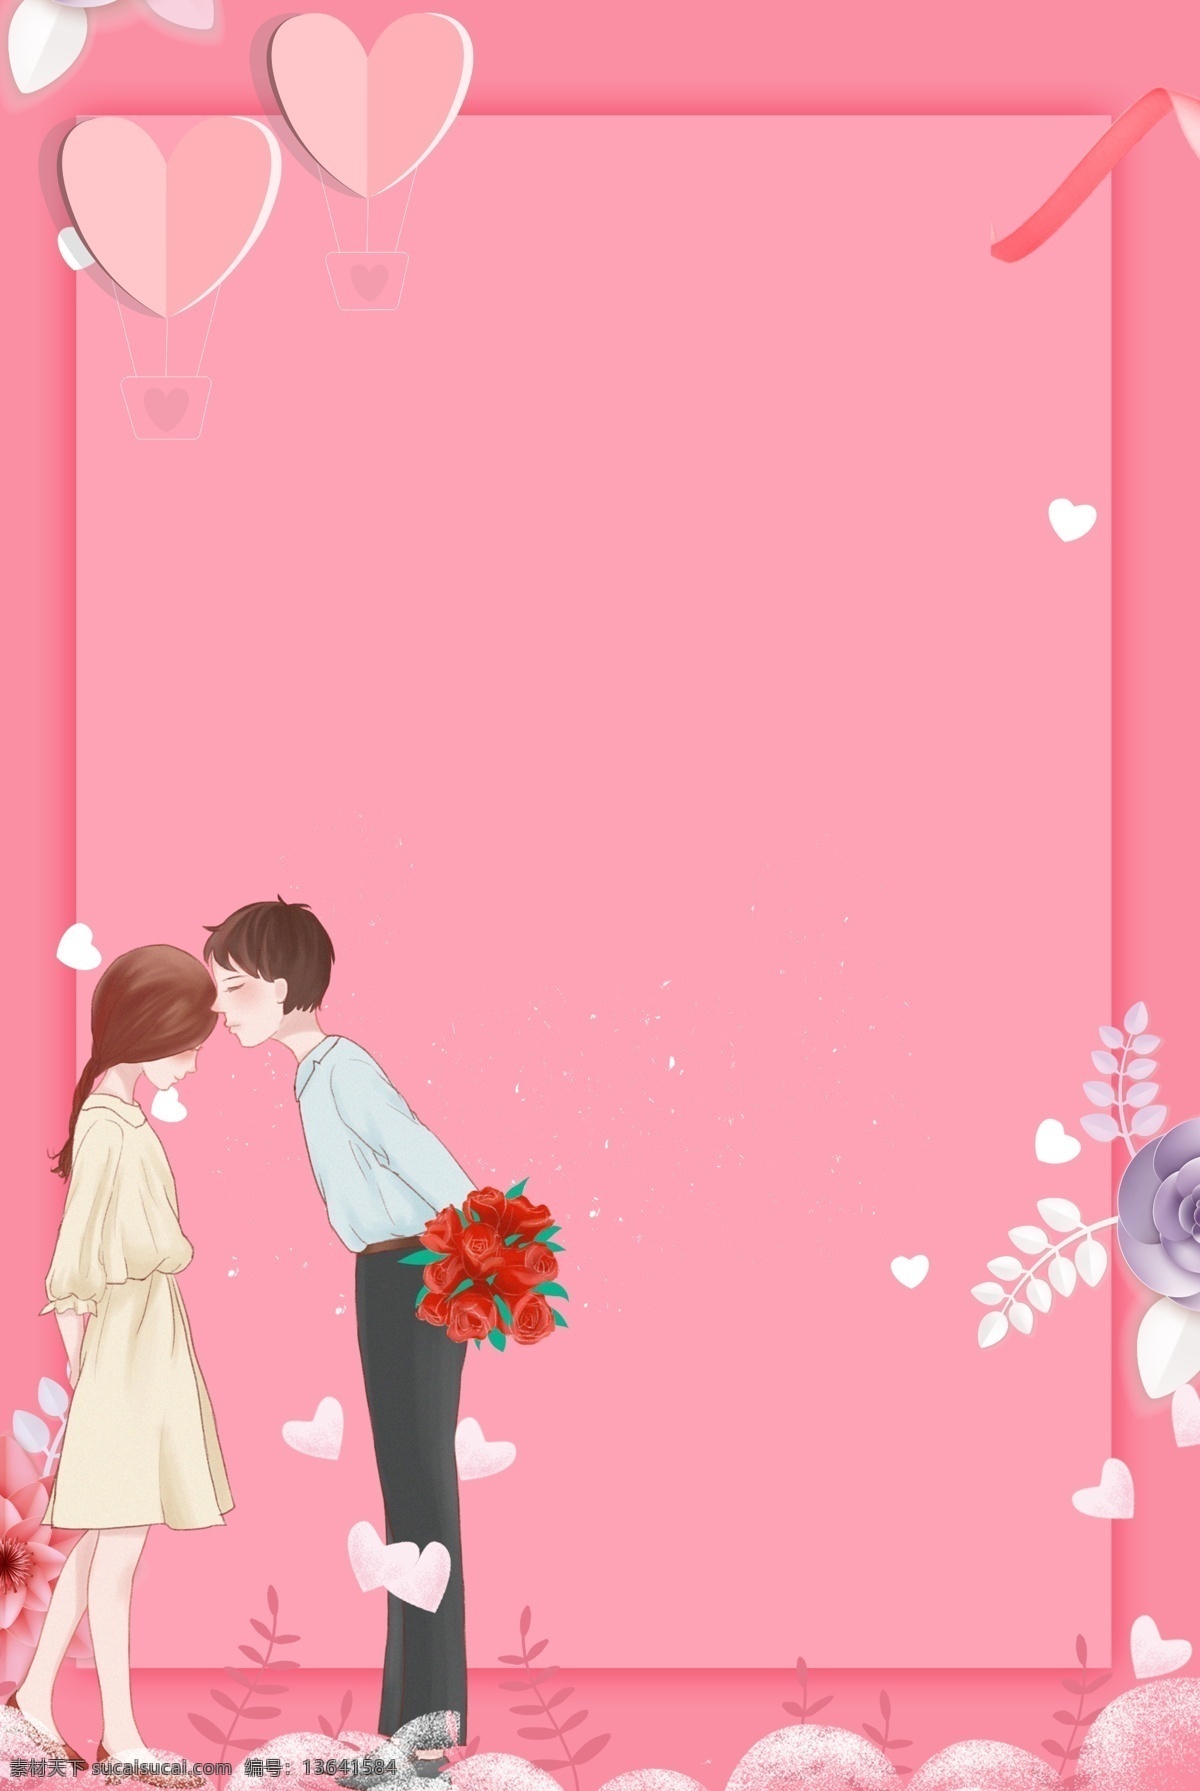 情人节 卡通 粉色 海报 背景 214 情侣 气球 心形 立体花朵 清新花朵 情人节海报 婚礼邀请